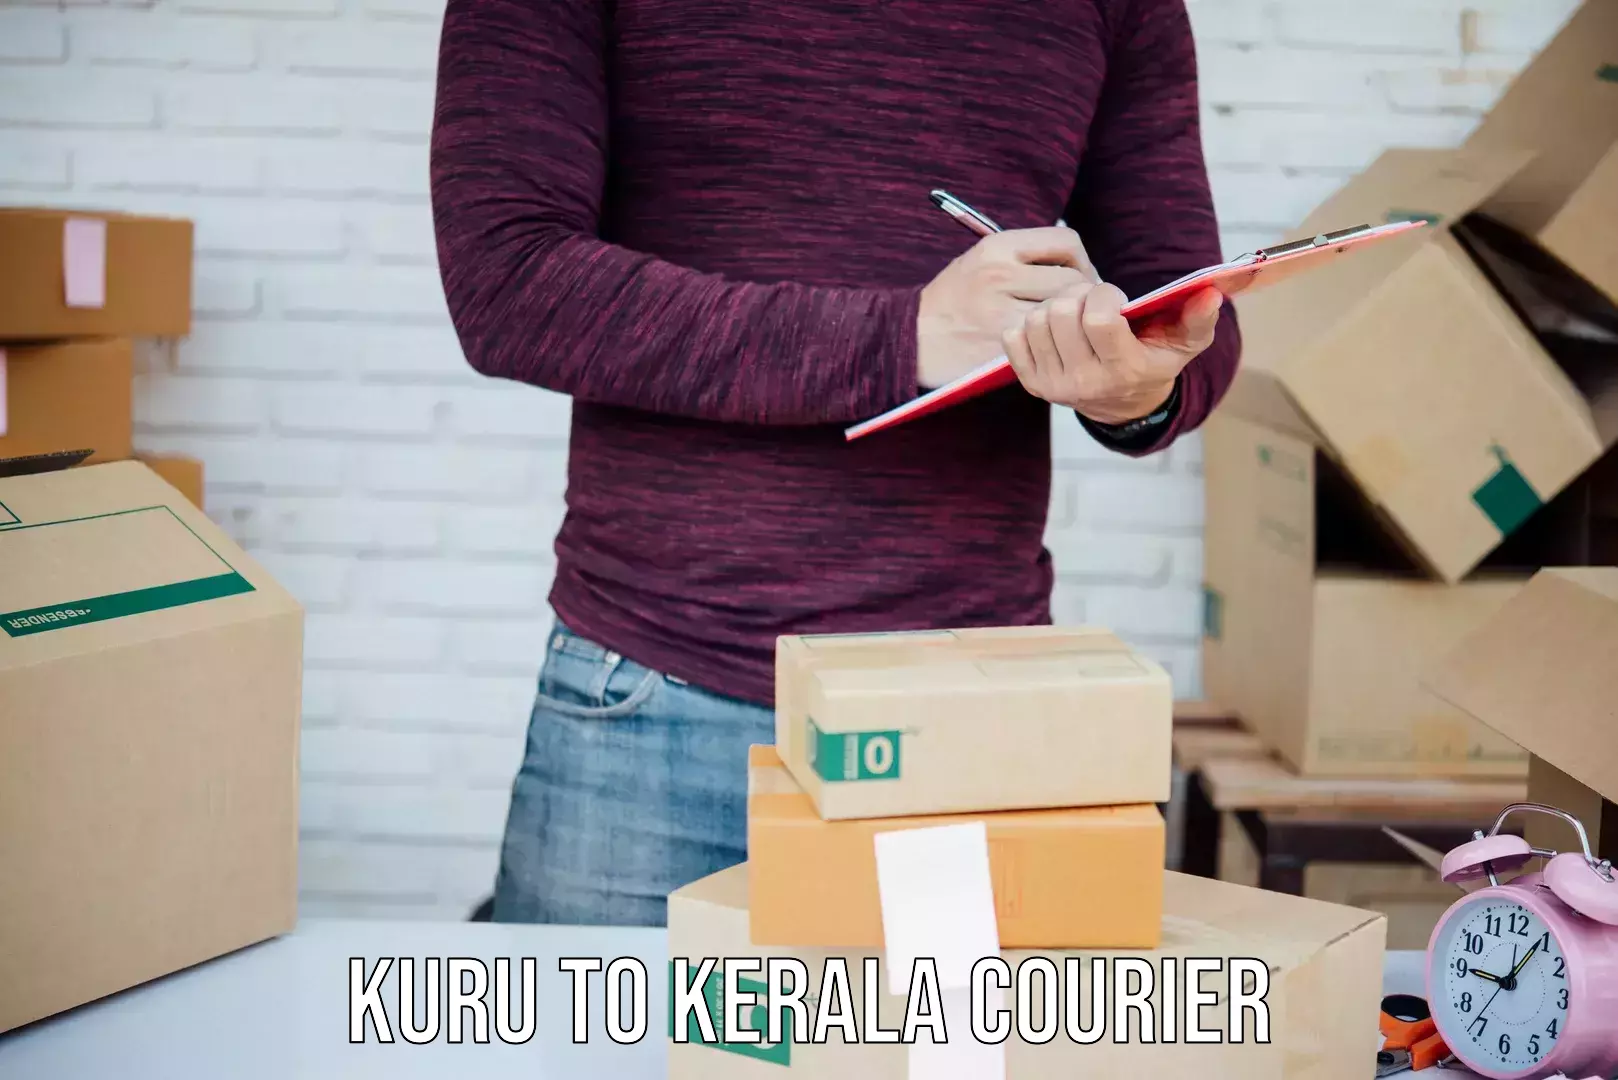 International shipping rates Kuru to Tirur